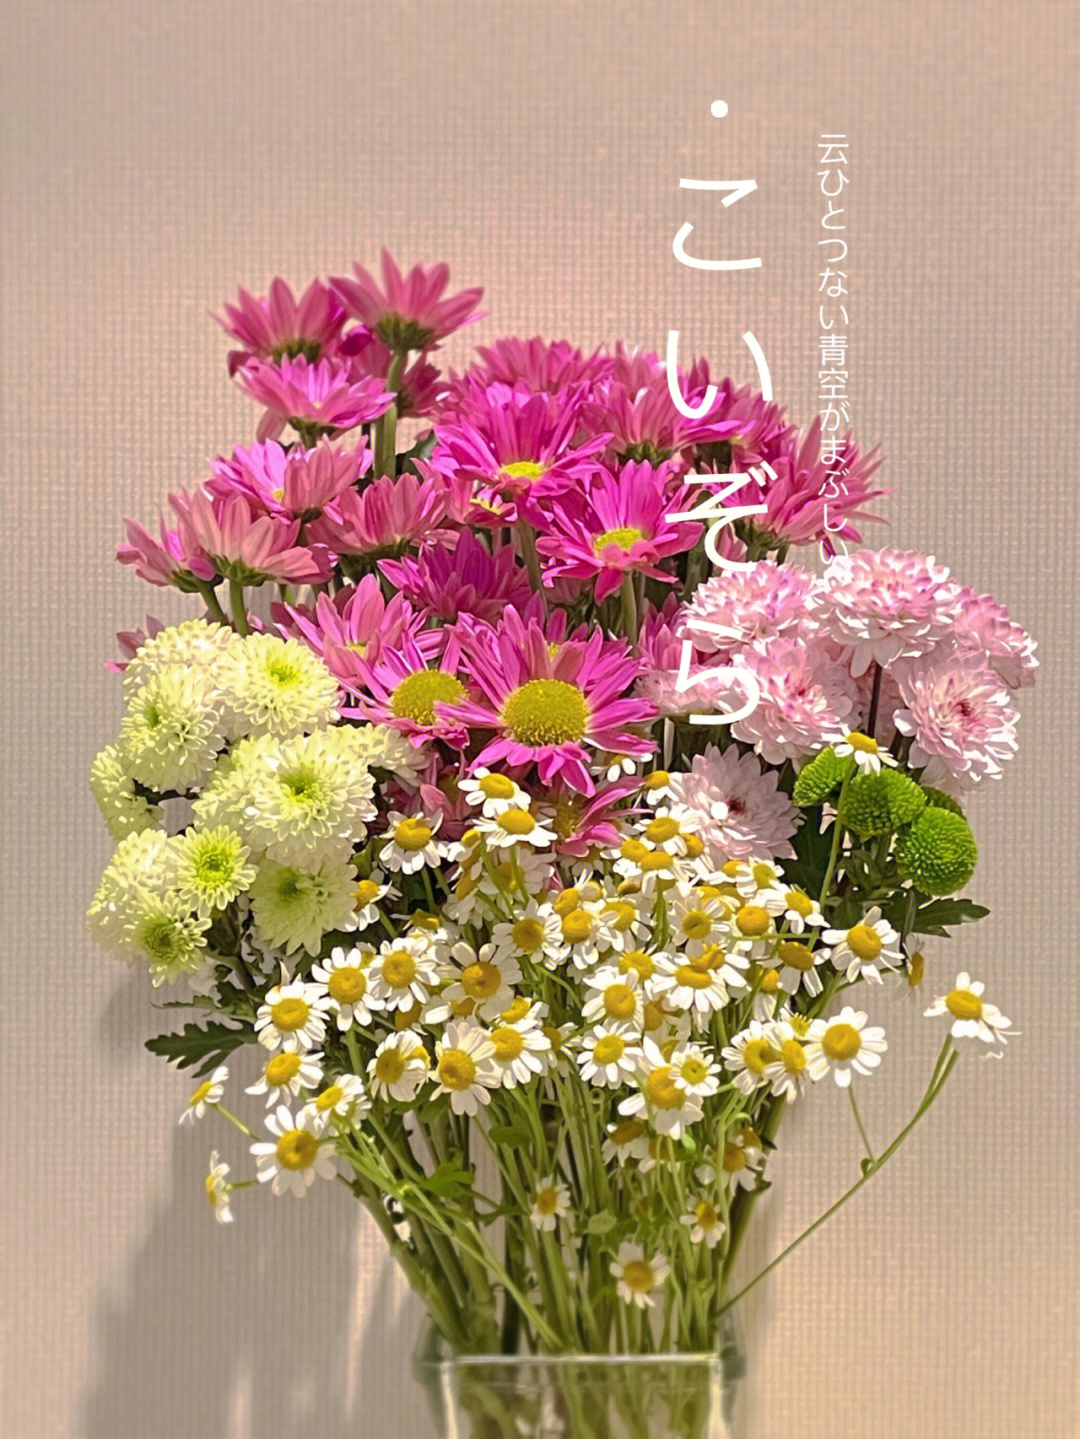 粉色多头小雏菊的花语图片